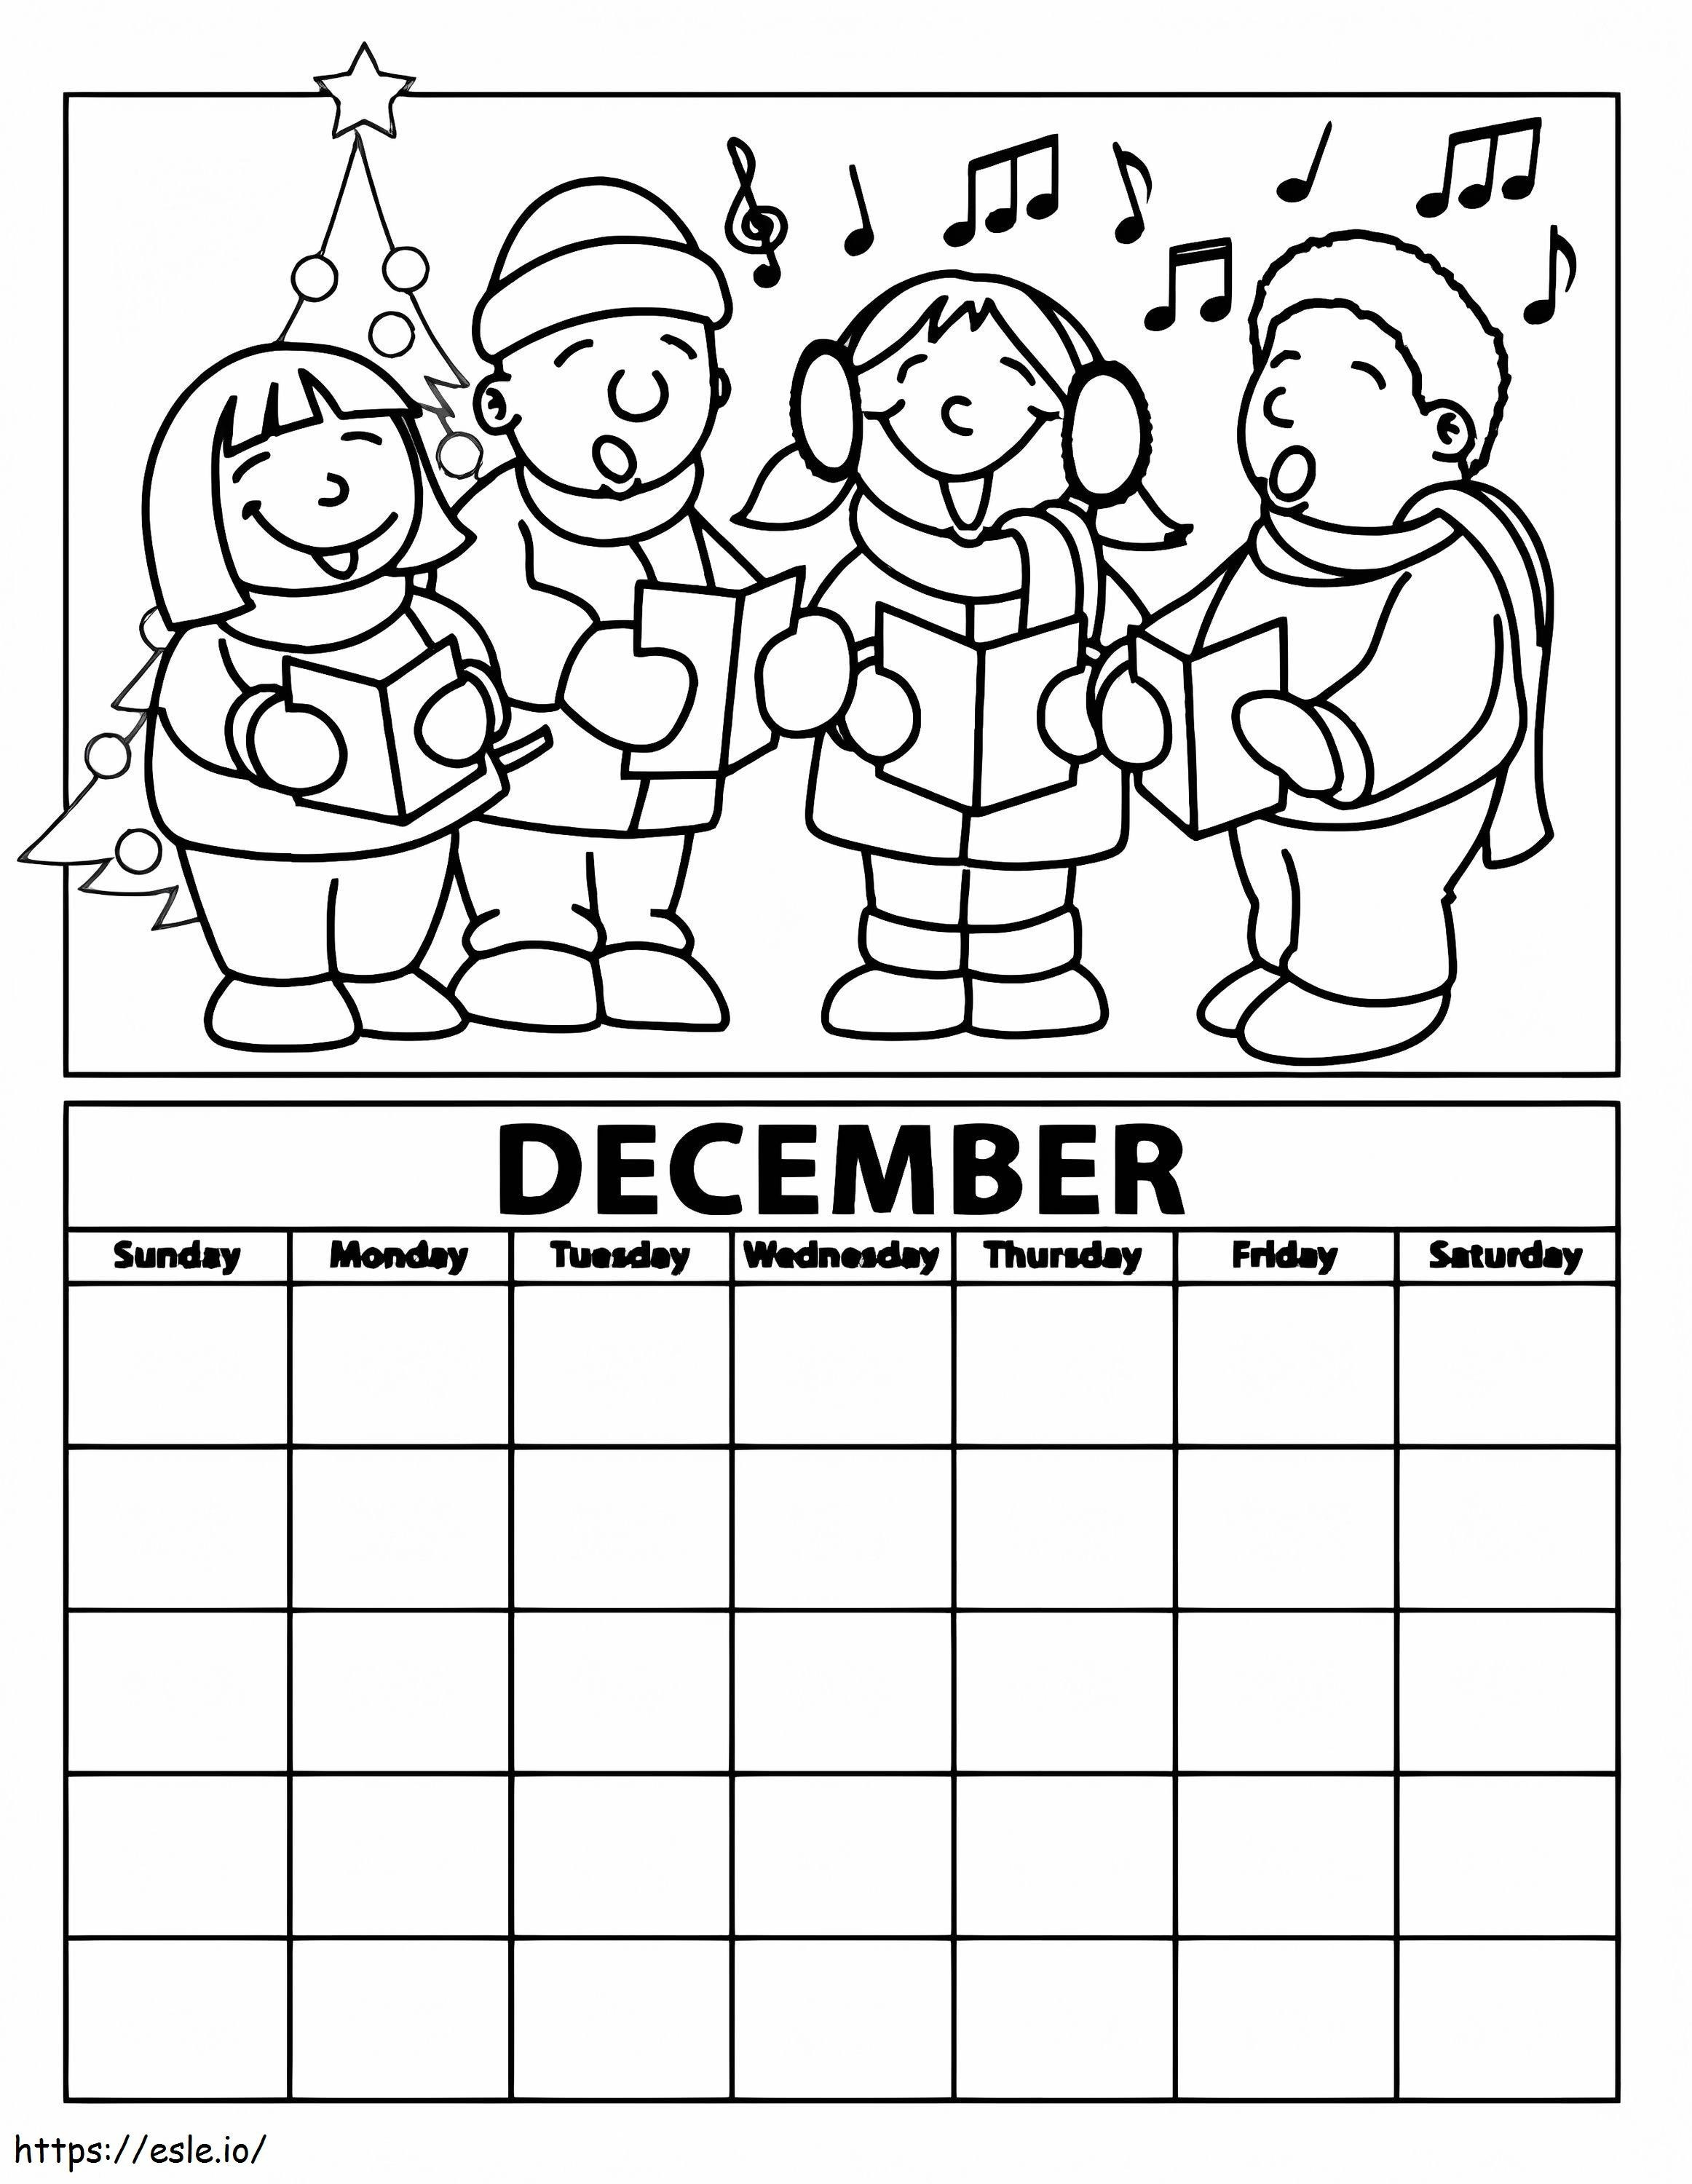 Calendario de diciembre imprimible para colorear